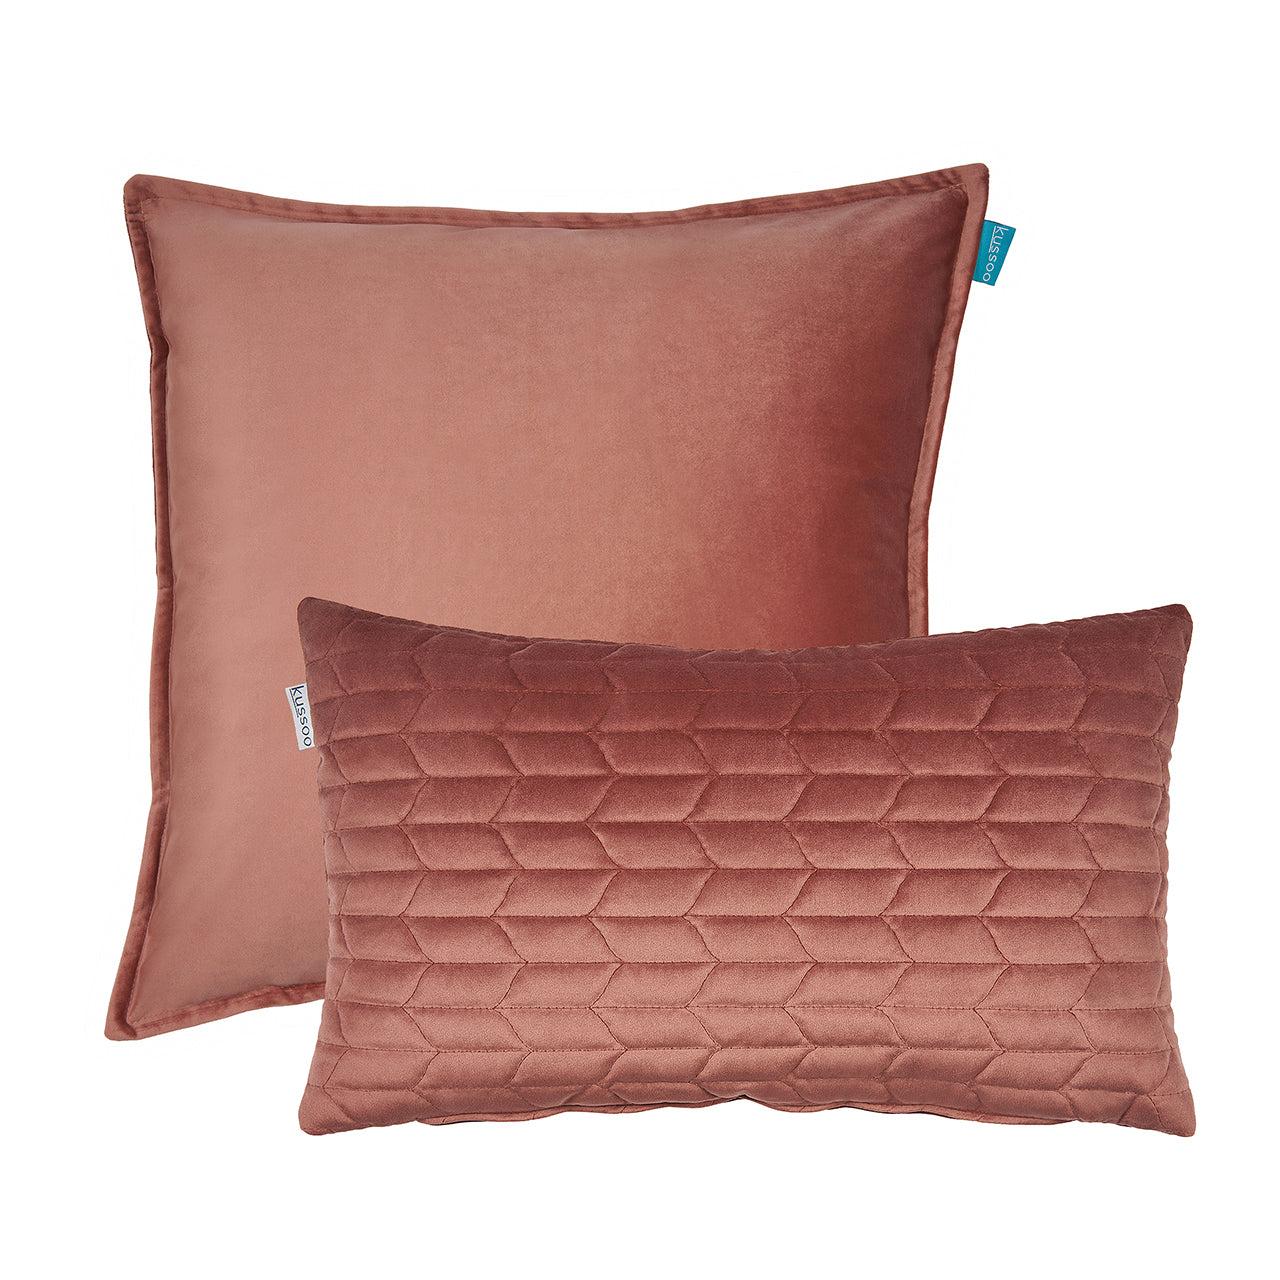 Kussenset-fluweel-roze-uni-50x50-en-patroon-30x50-cm